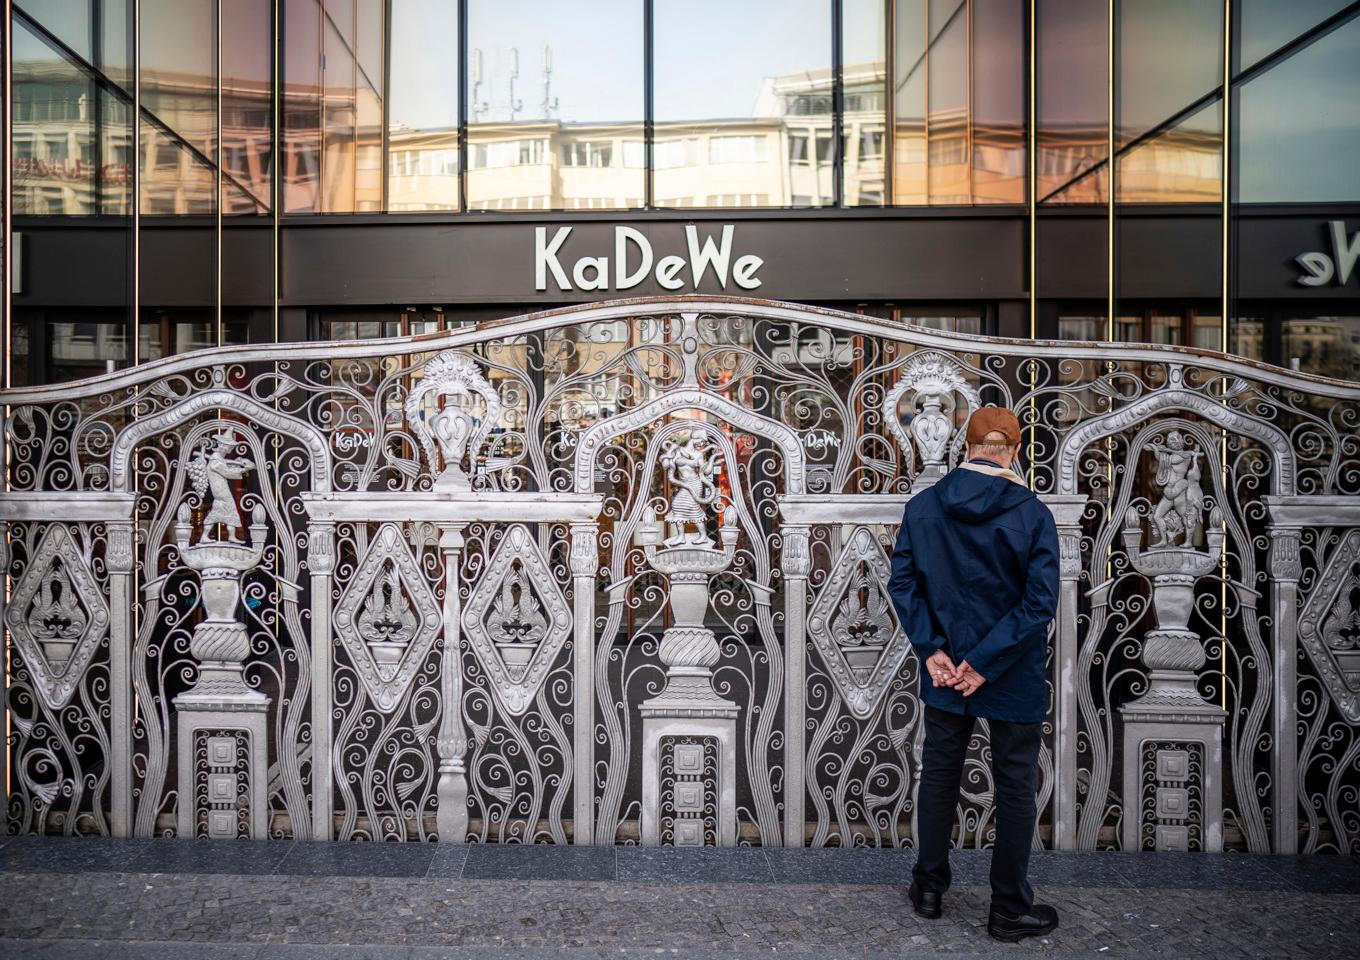 KaDeWe, en av Berlins viktigaste symboler, har gått i konkurs. Arkivbild. Foto: Michael Kappeler/AP/TT